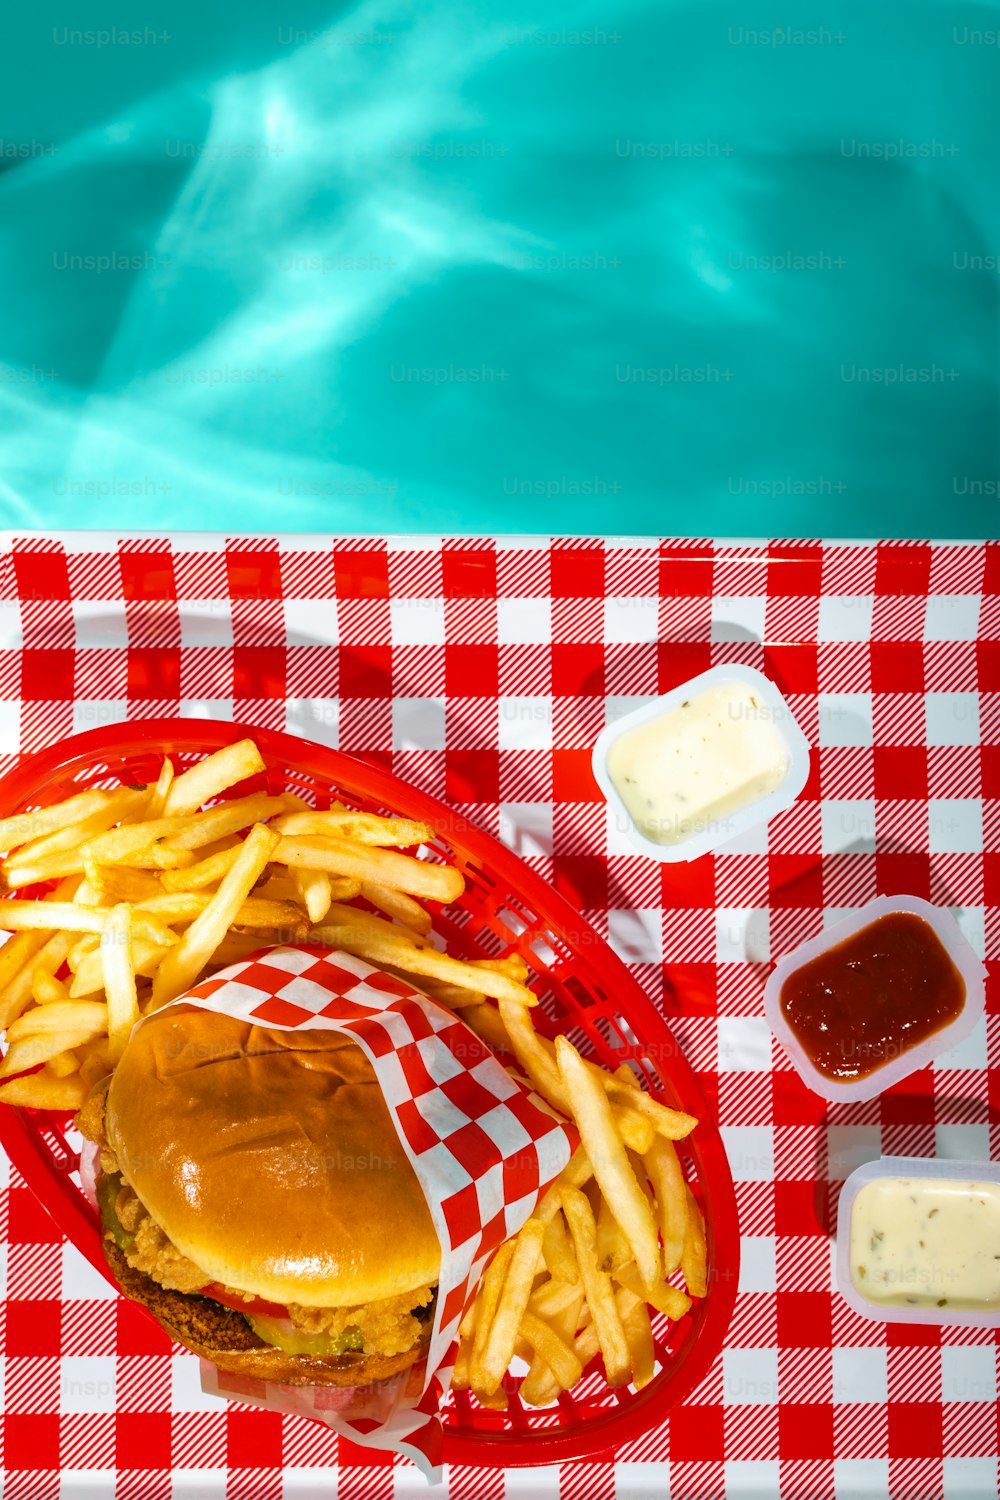 un hamburger et des frites sur une nappe à carreaux rouge et blanc